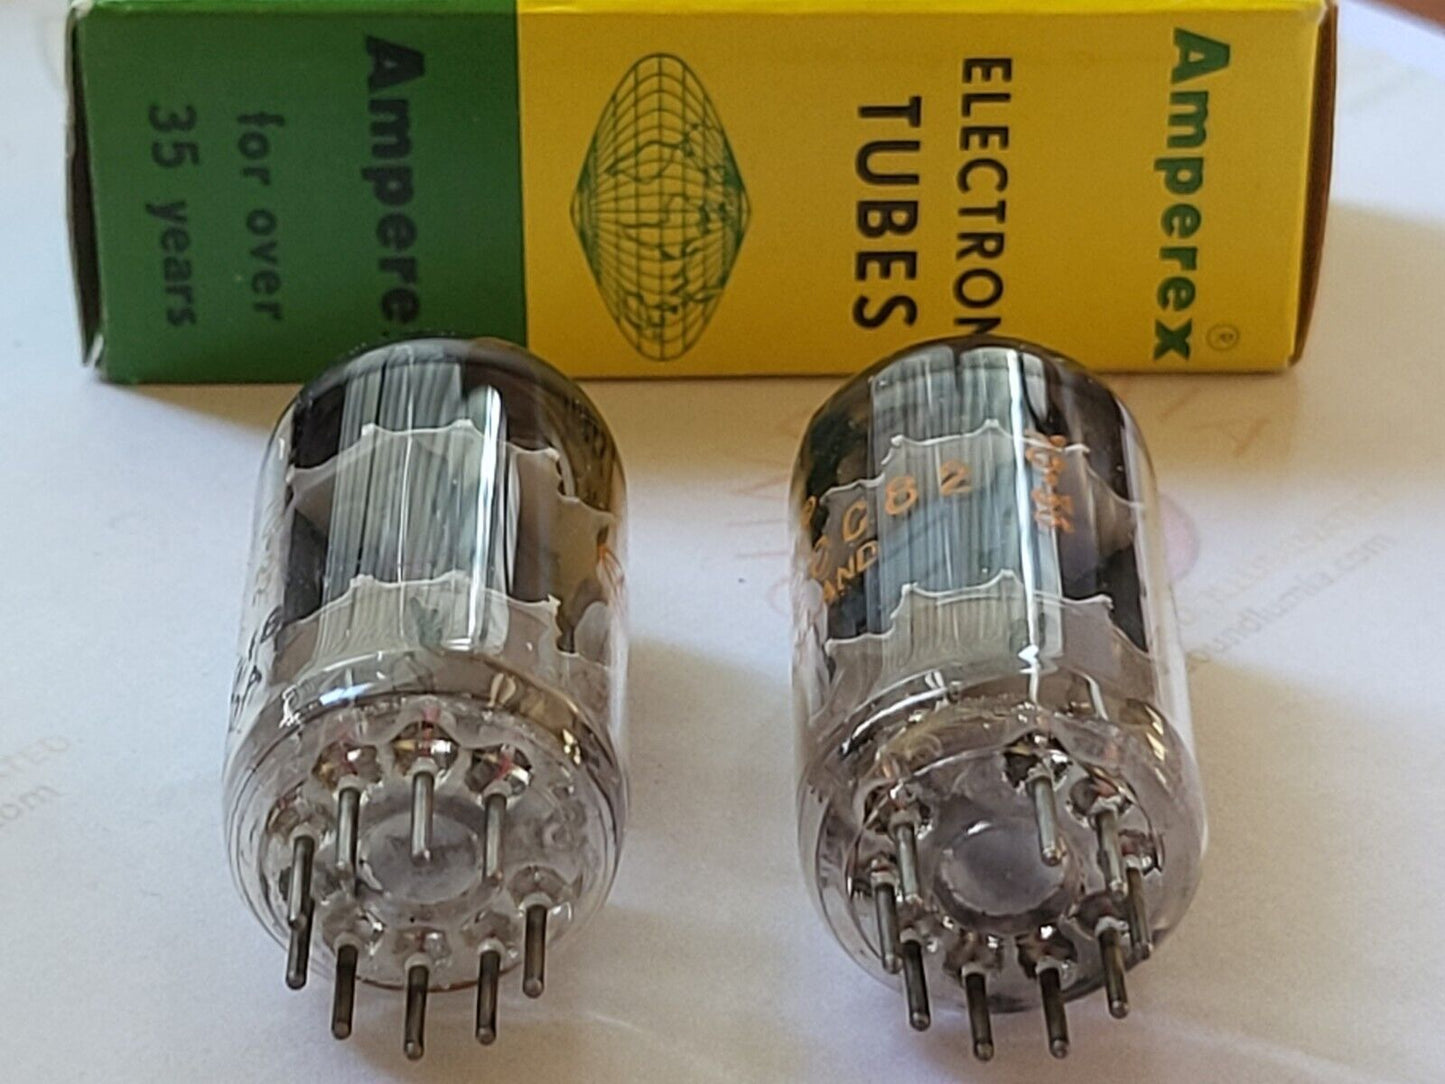 Amperex 12AU7 ECC82 Tubes Matched Pair - Orange Globe - Holland 1960 - Extra Rare - NOS